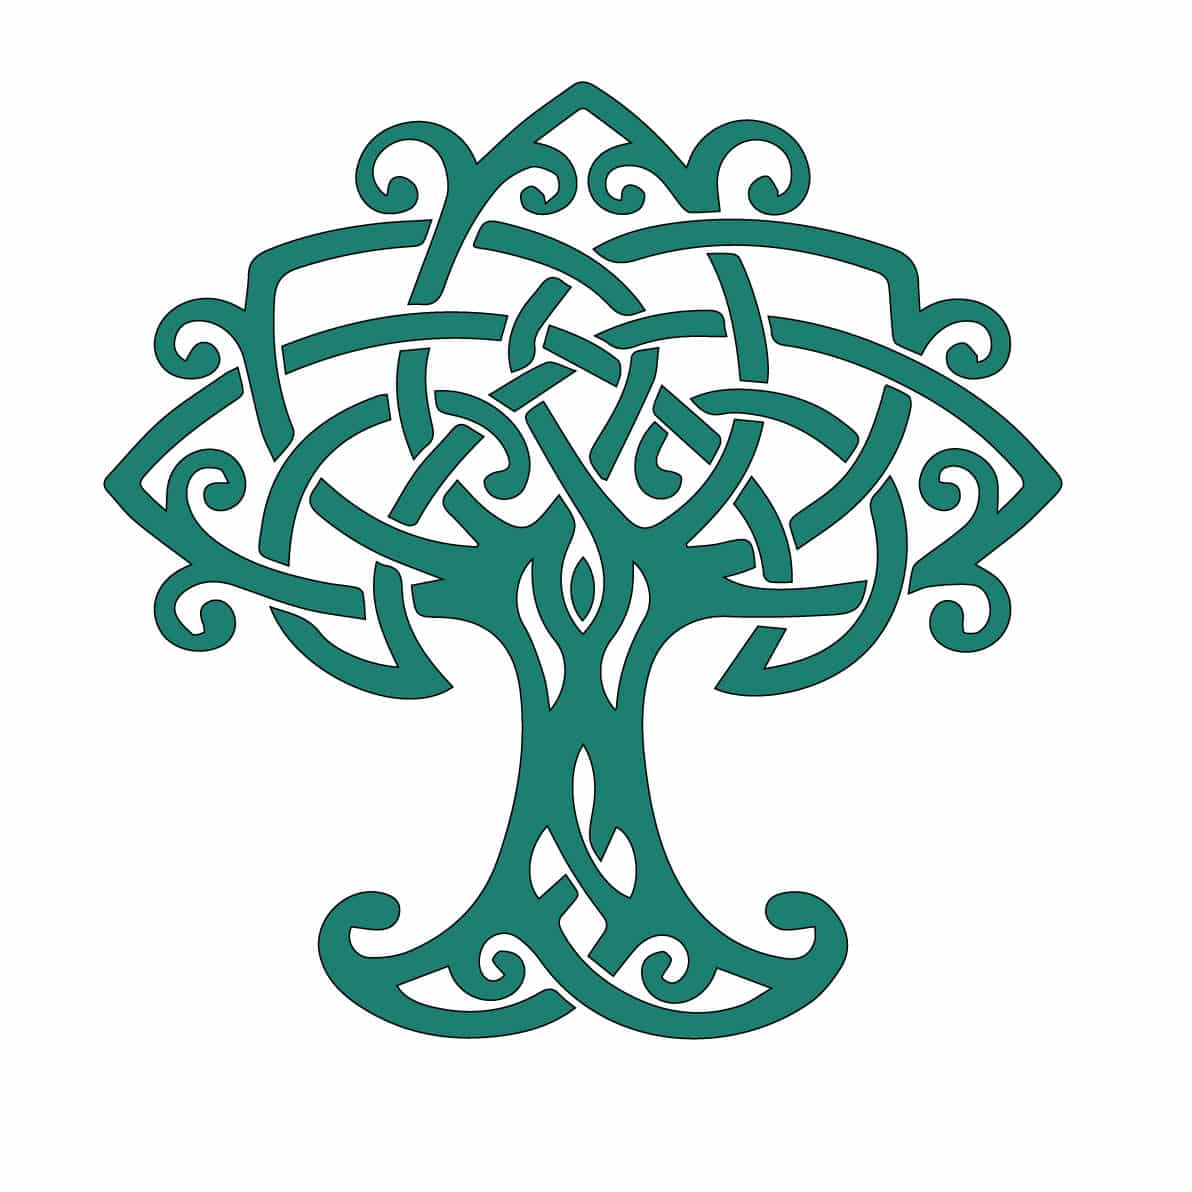 Le symbole du nœud celtique et sa signification | Acheter ...